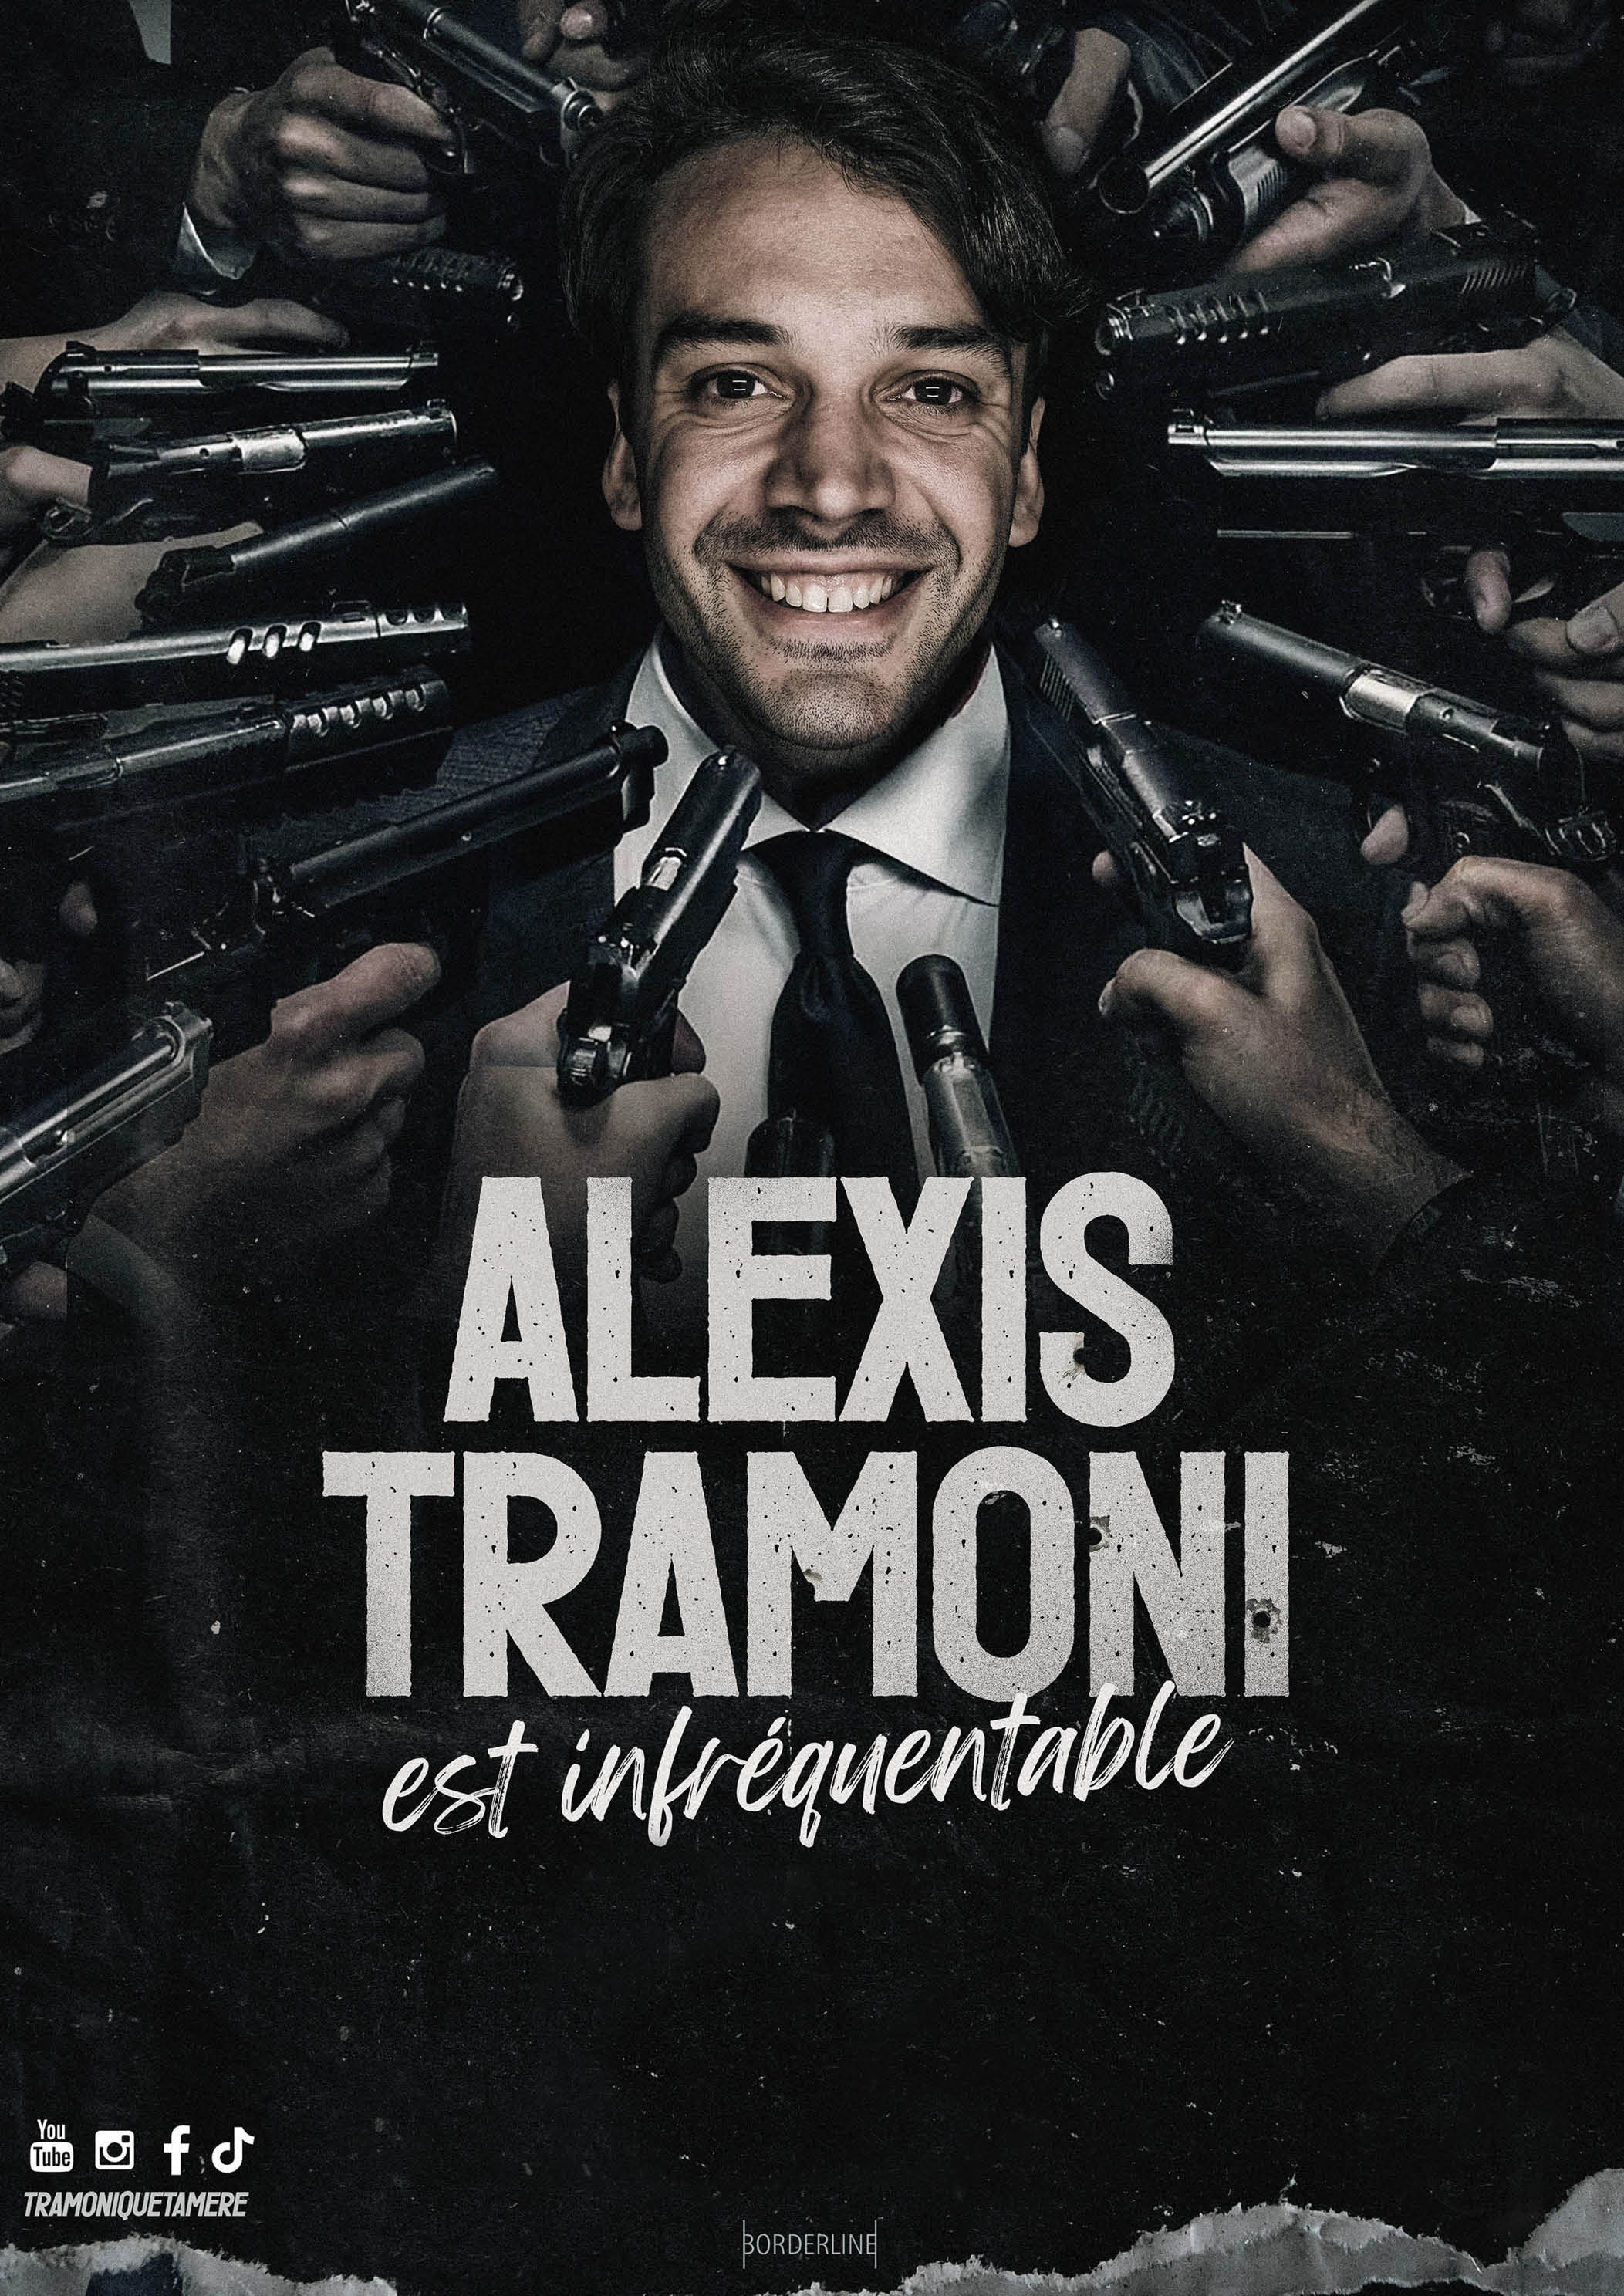 Alexis Tramoni "est infréquentable"